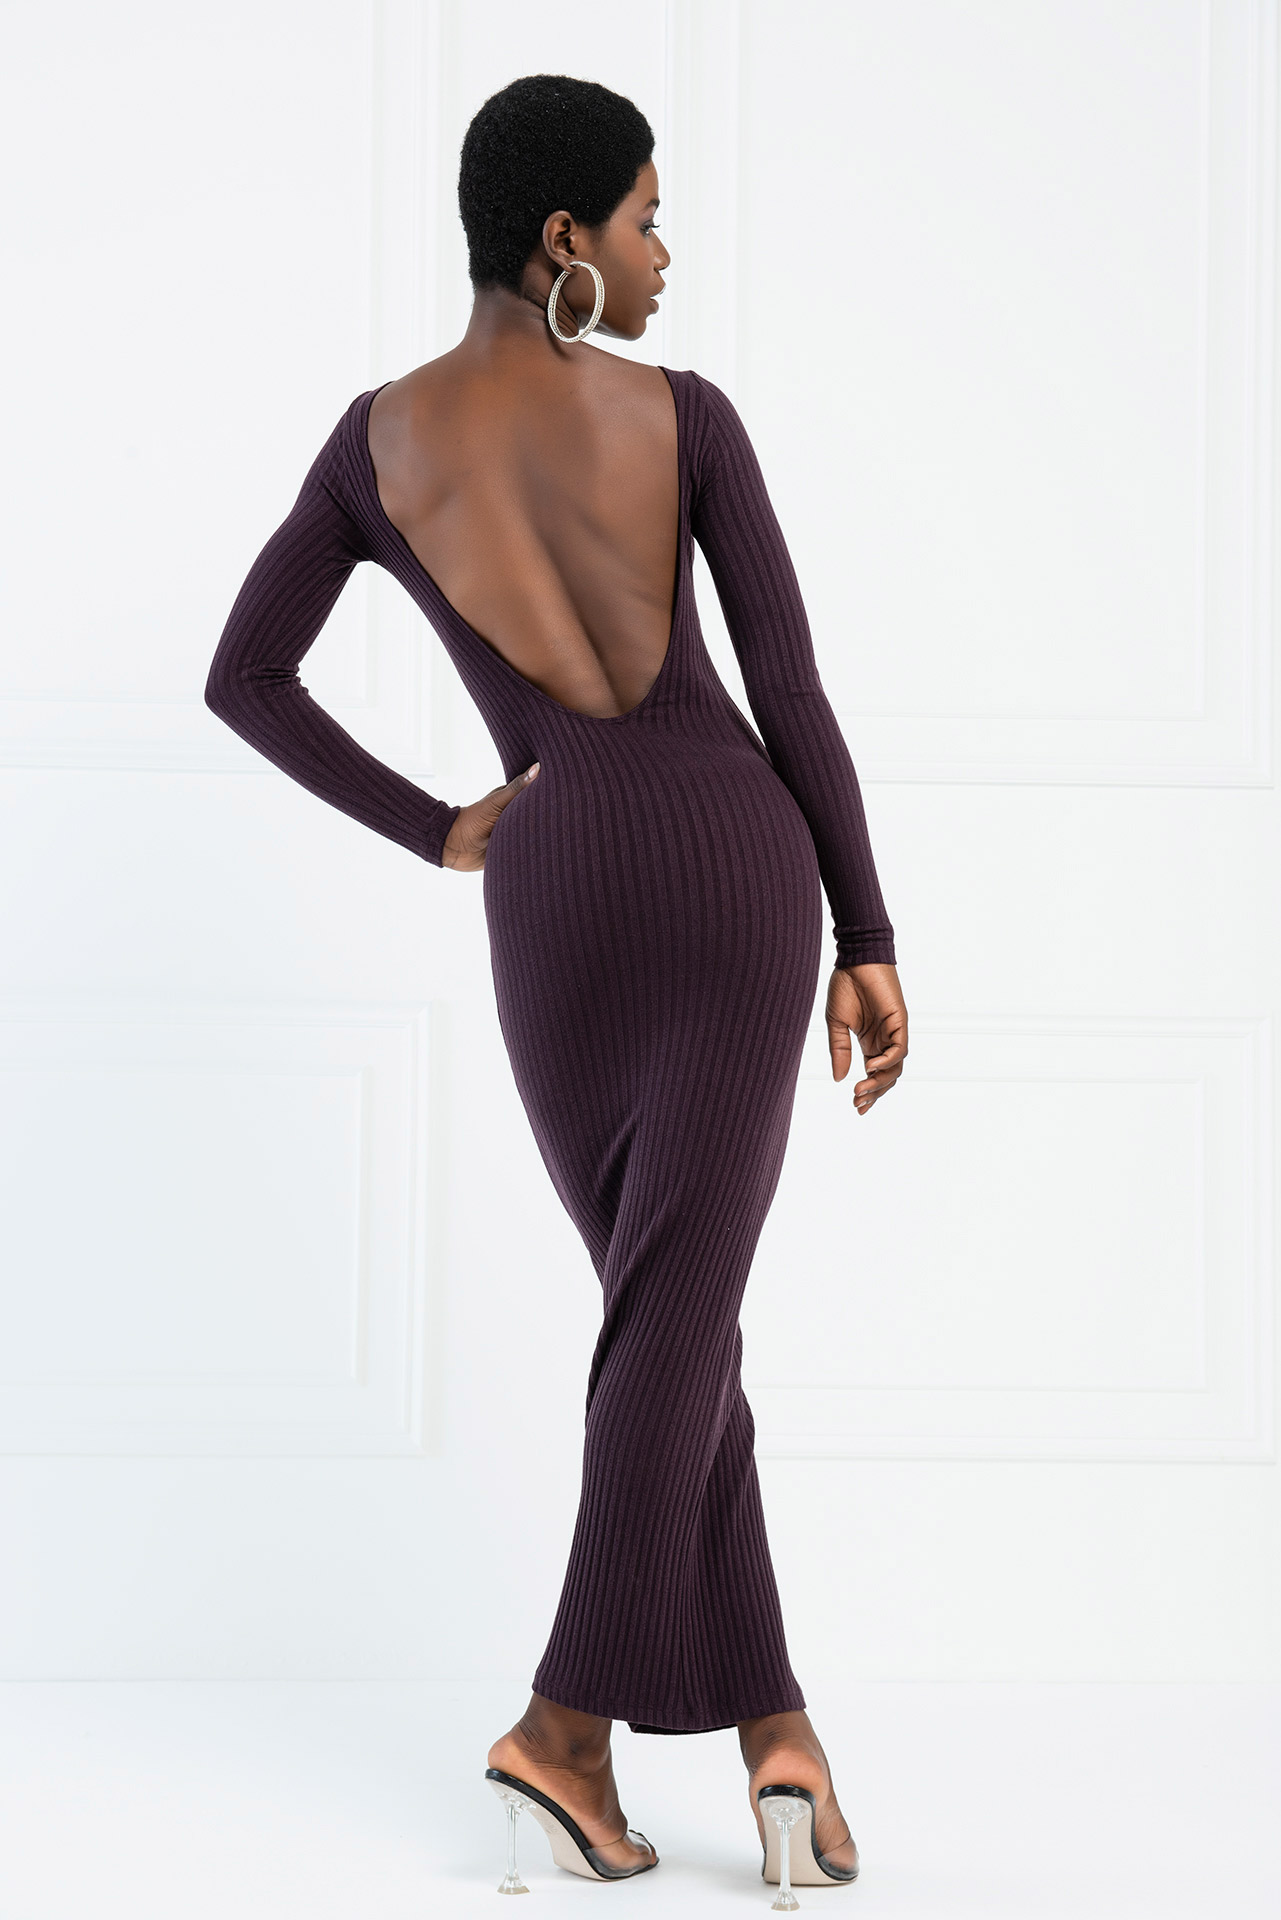 Backless Off Shoulder Dark Purple Dress